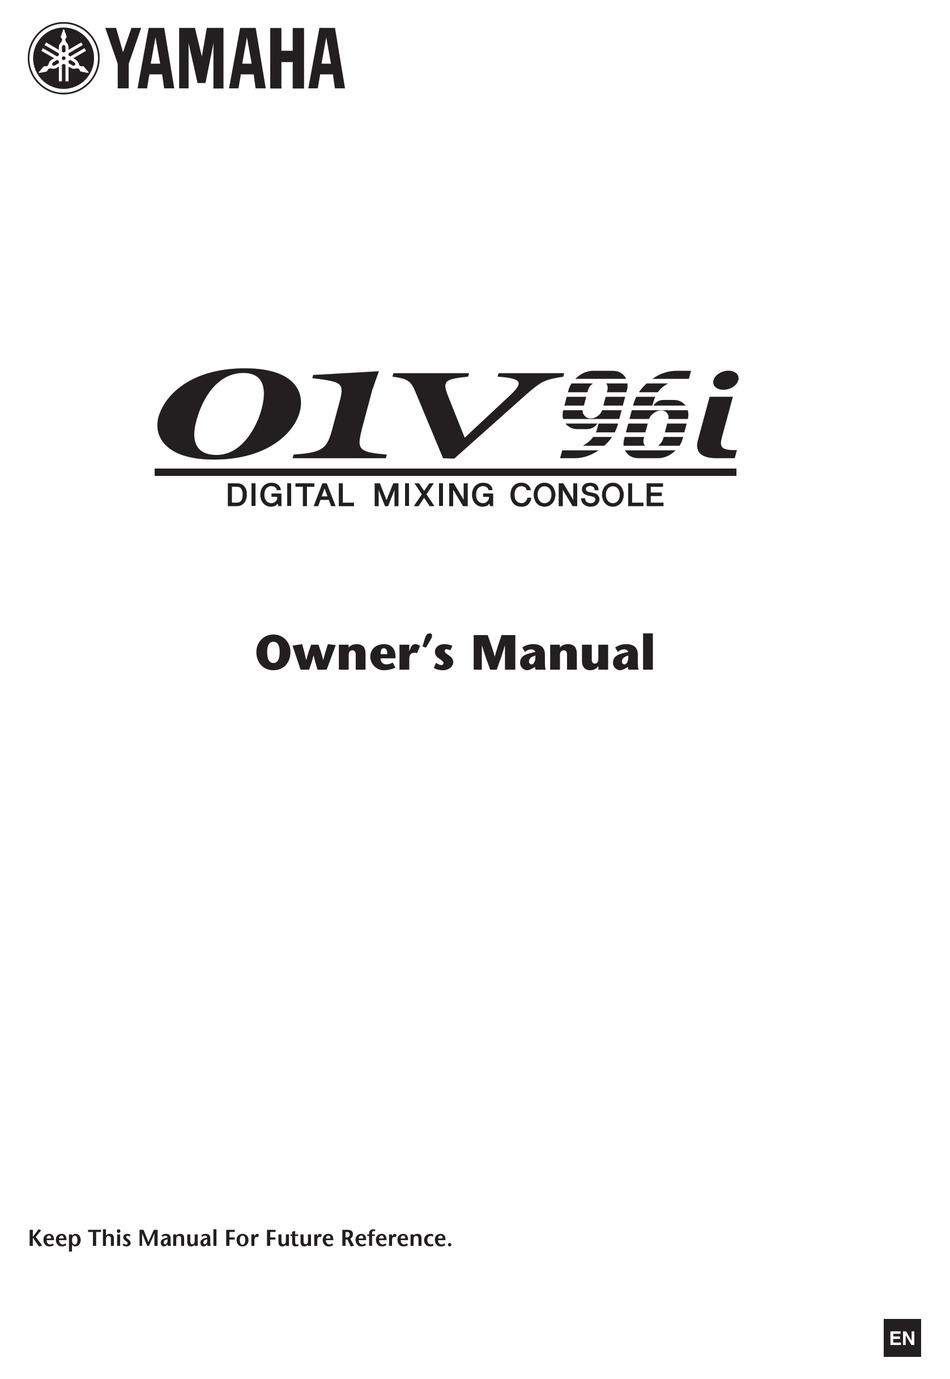 YAMAHA 01V96I OWNER'S MANUAL Pdf Download | ManualsLib